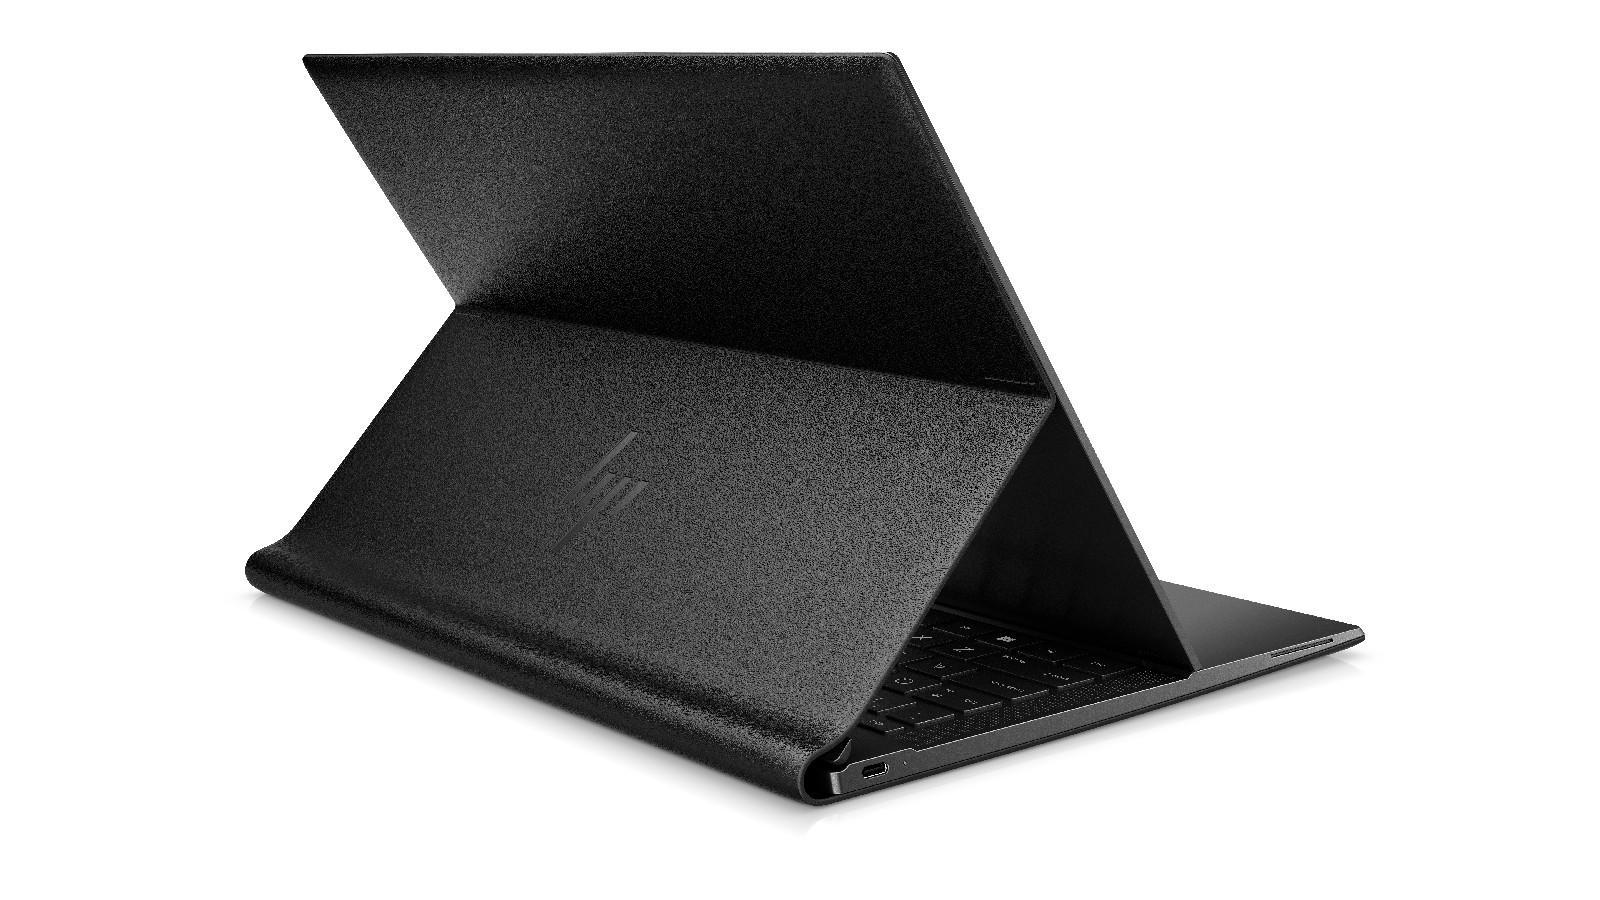 CES 2021: Деловой ноутбук HP Elite Folio в кожаном корпусе использует процессор Snapdragon (91696885 5214 11eb adff 1248094ccf9d)